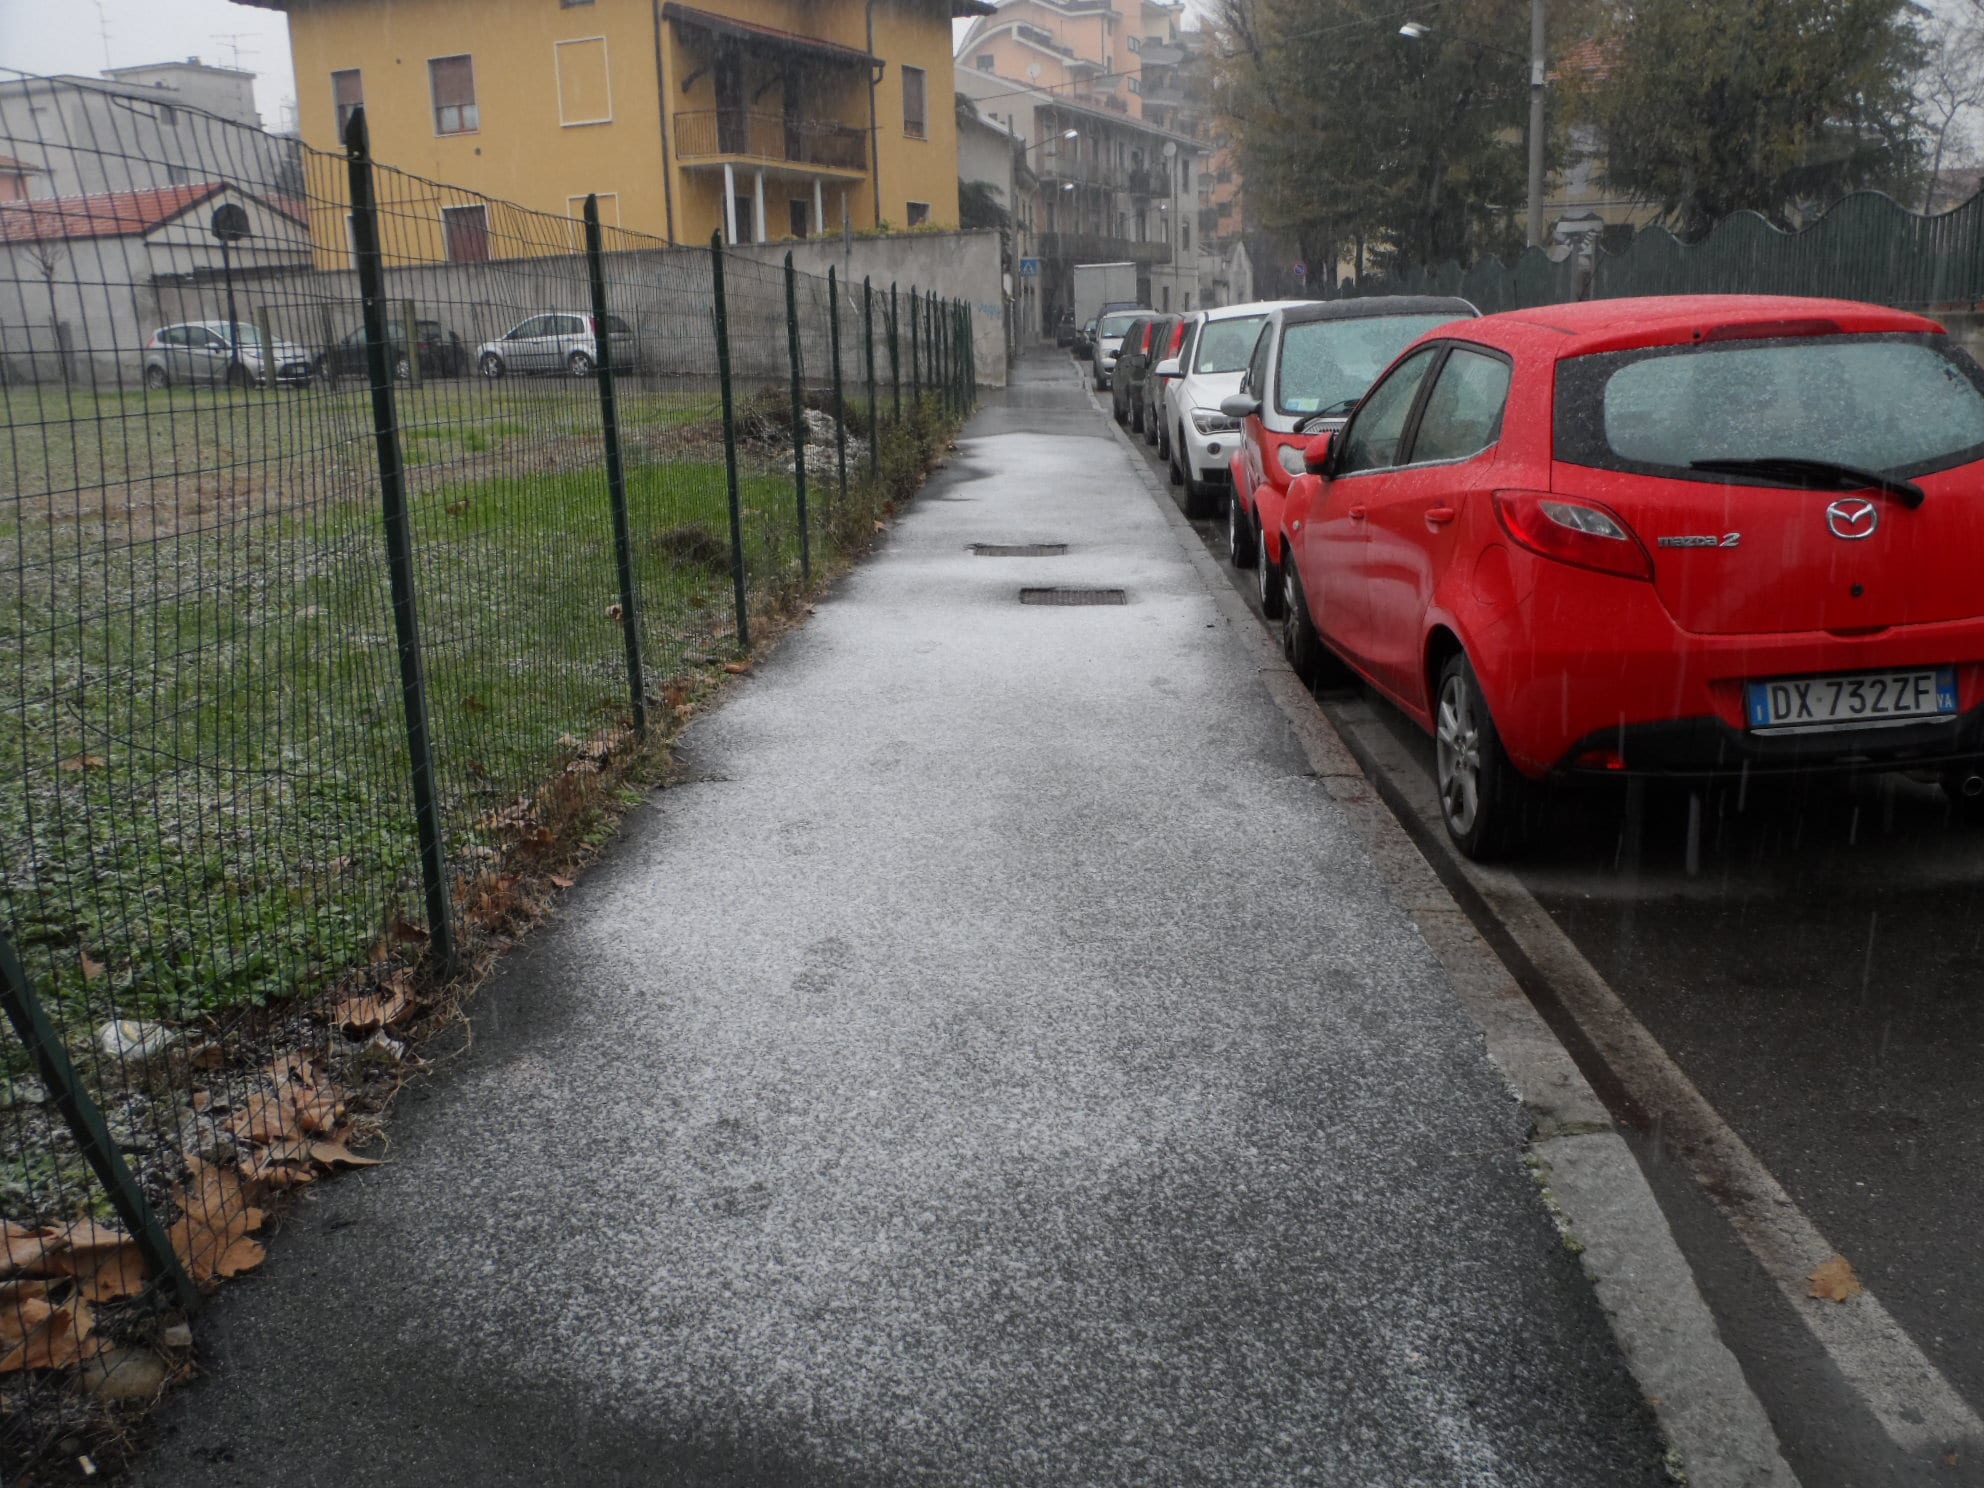 Saronno, la prima neve dell’autunno 2013